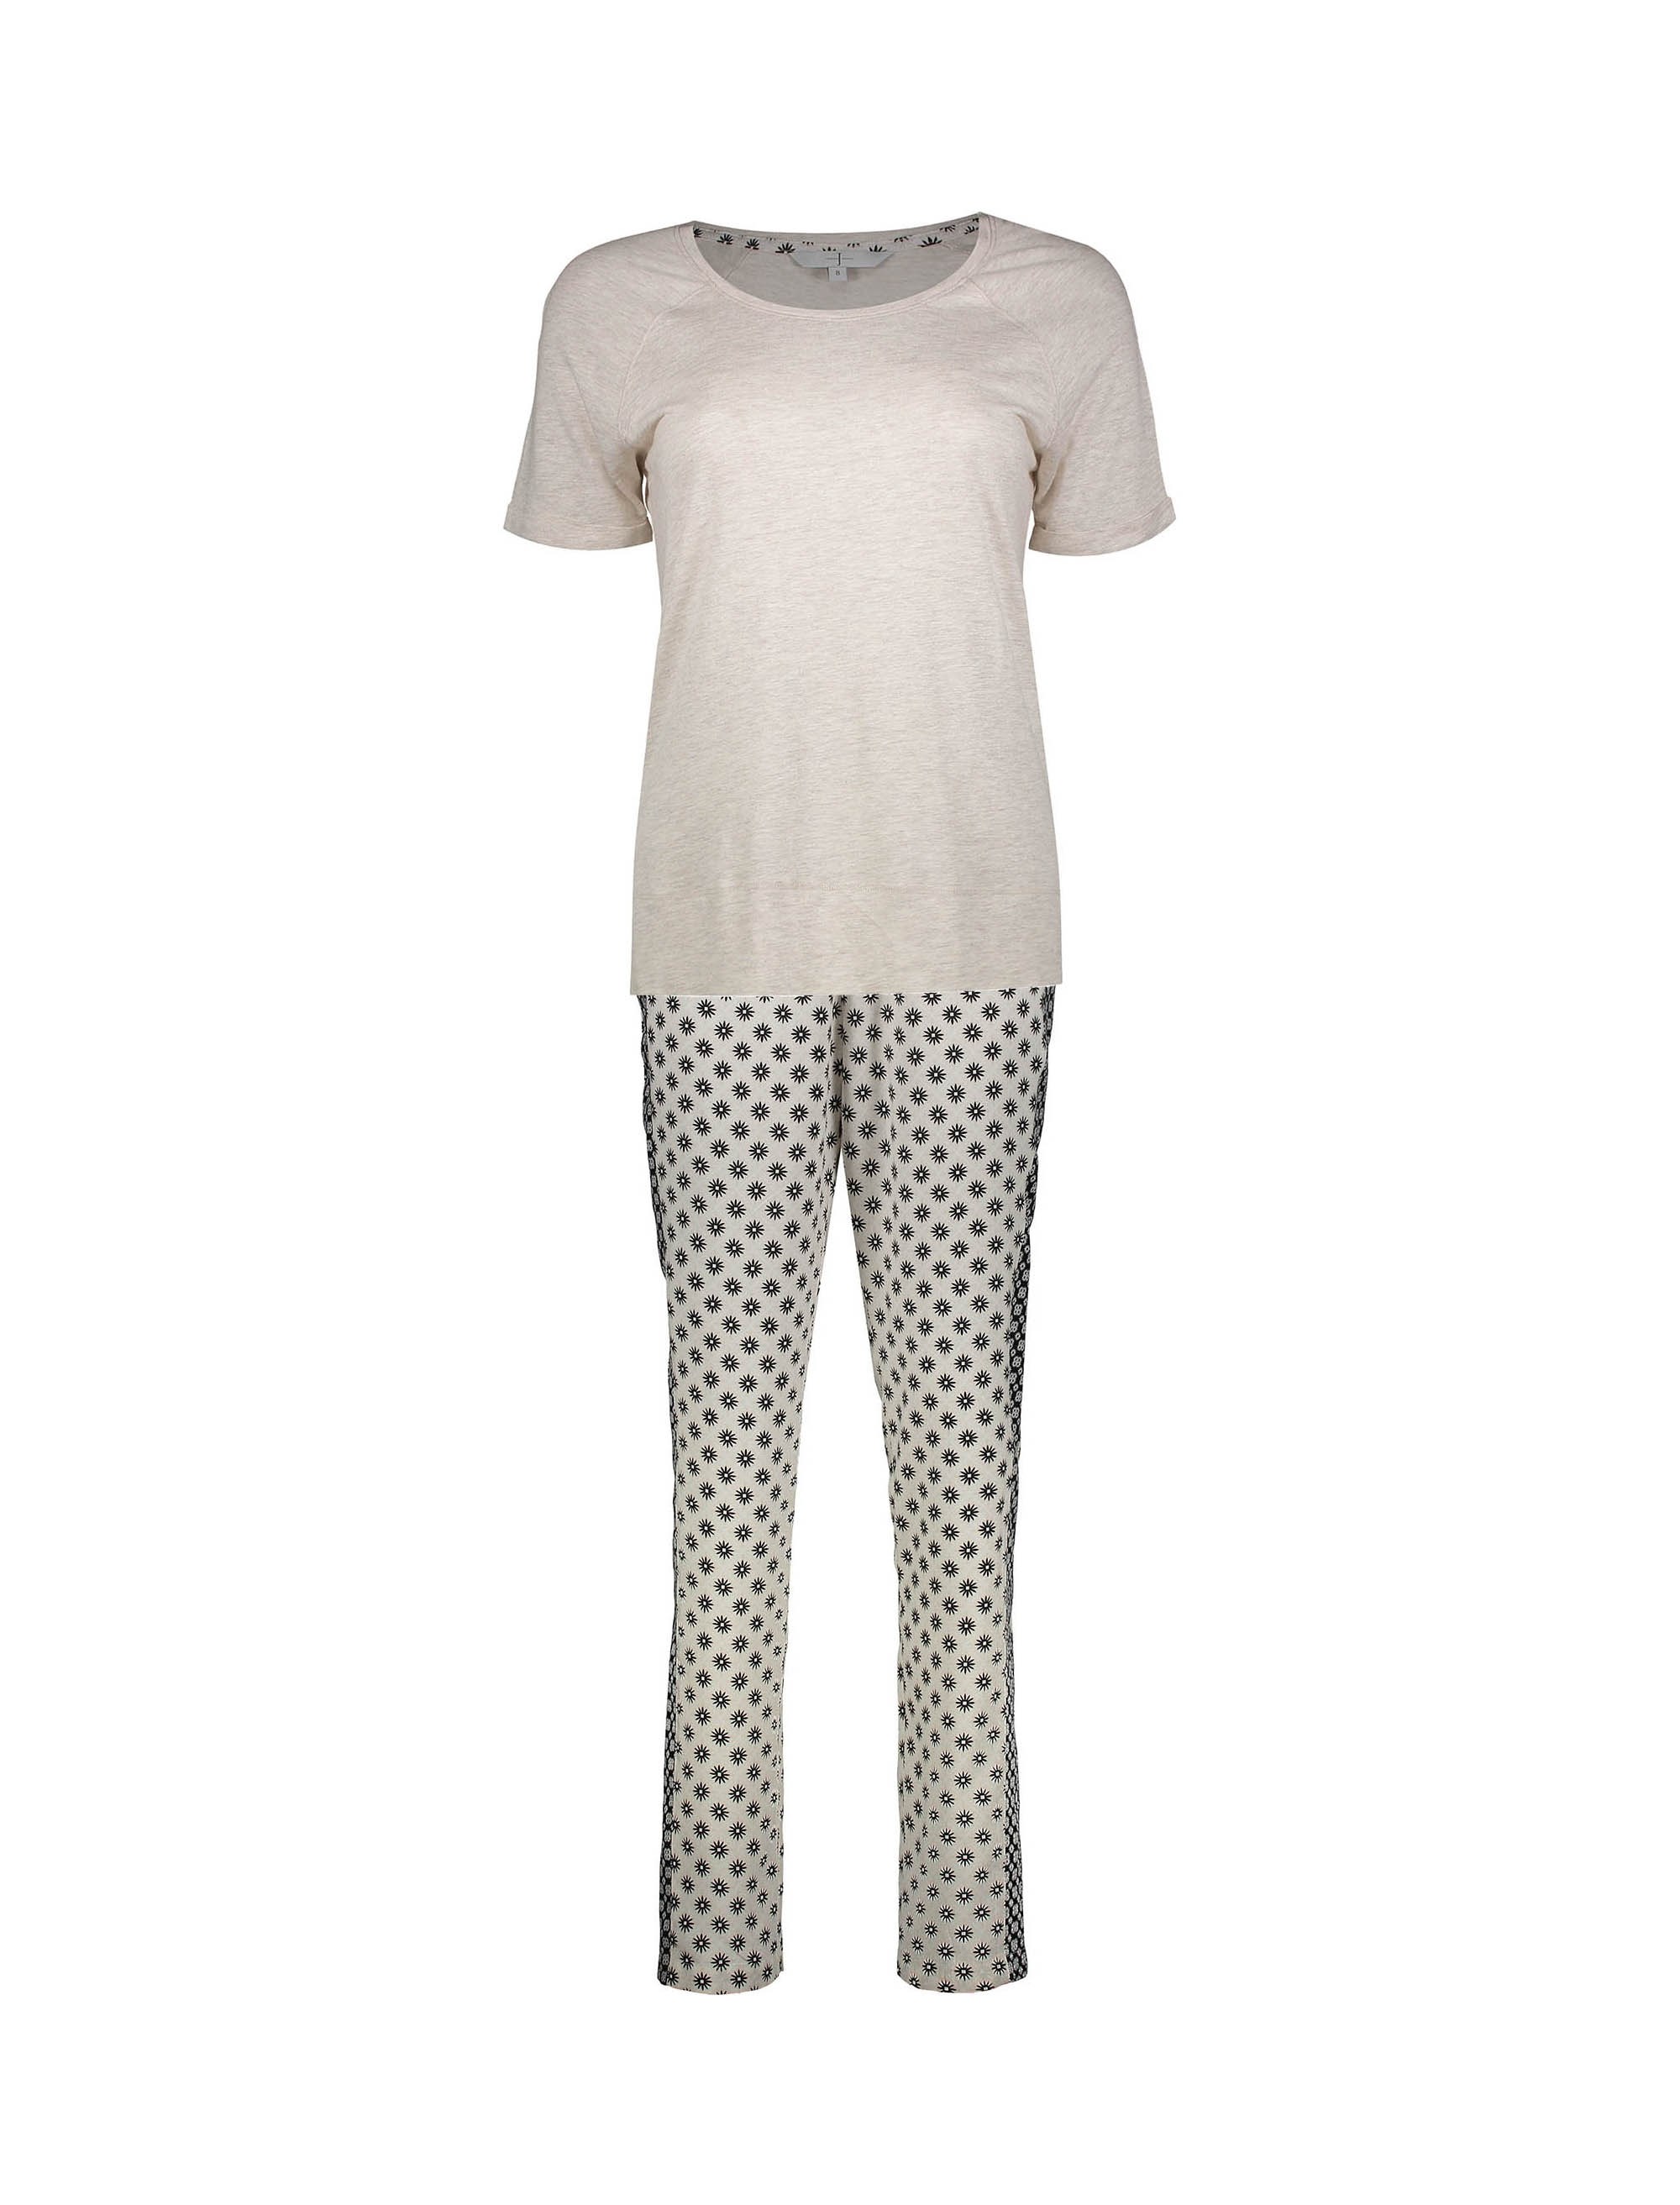 تی شرت و شلوار ویسکوز راحتی زنانه - جی بای جسپرکنران - سفيد - 1